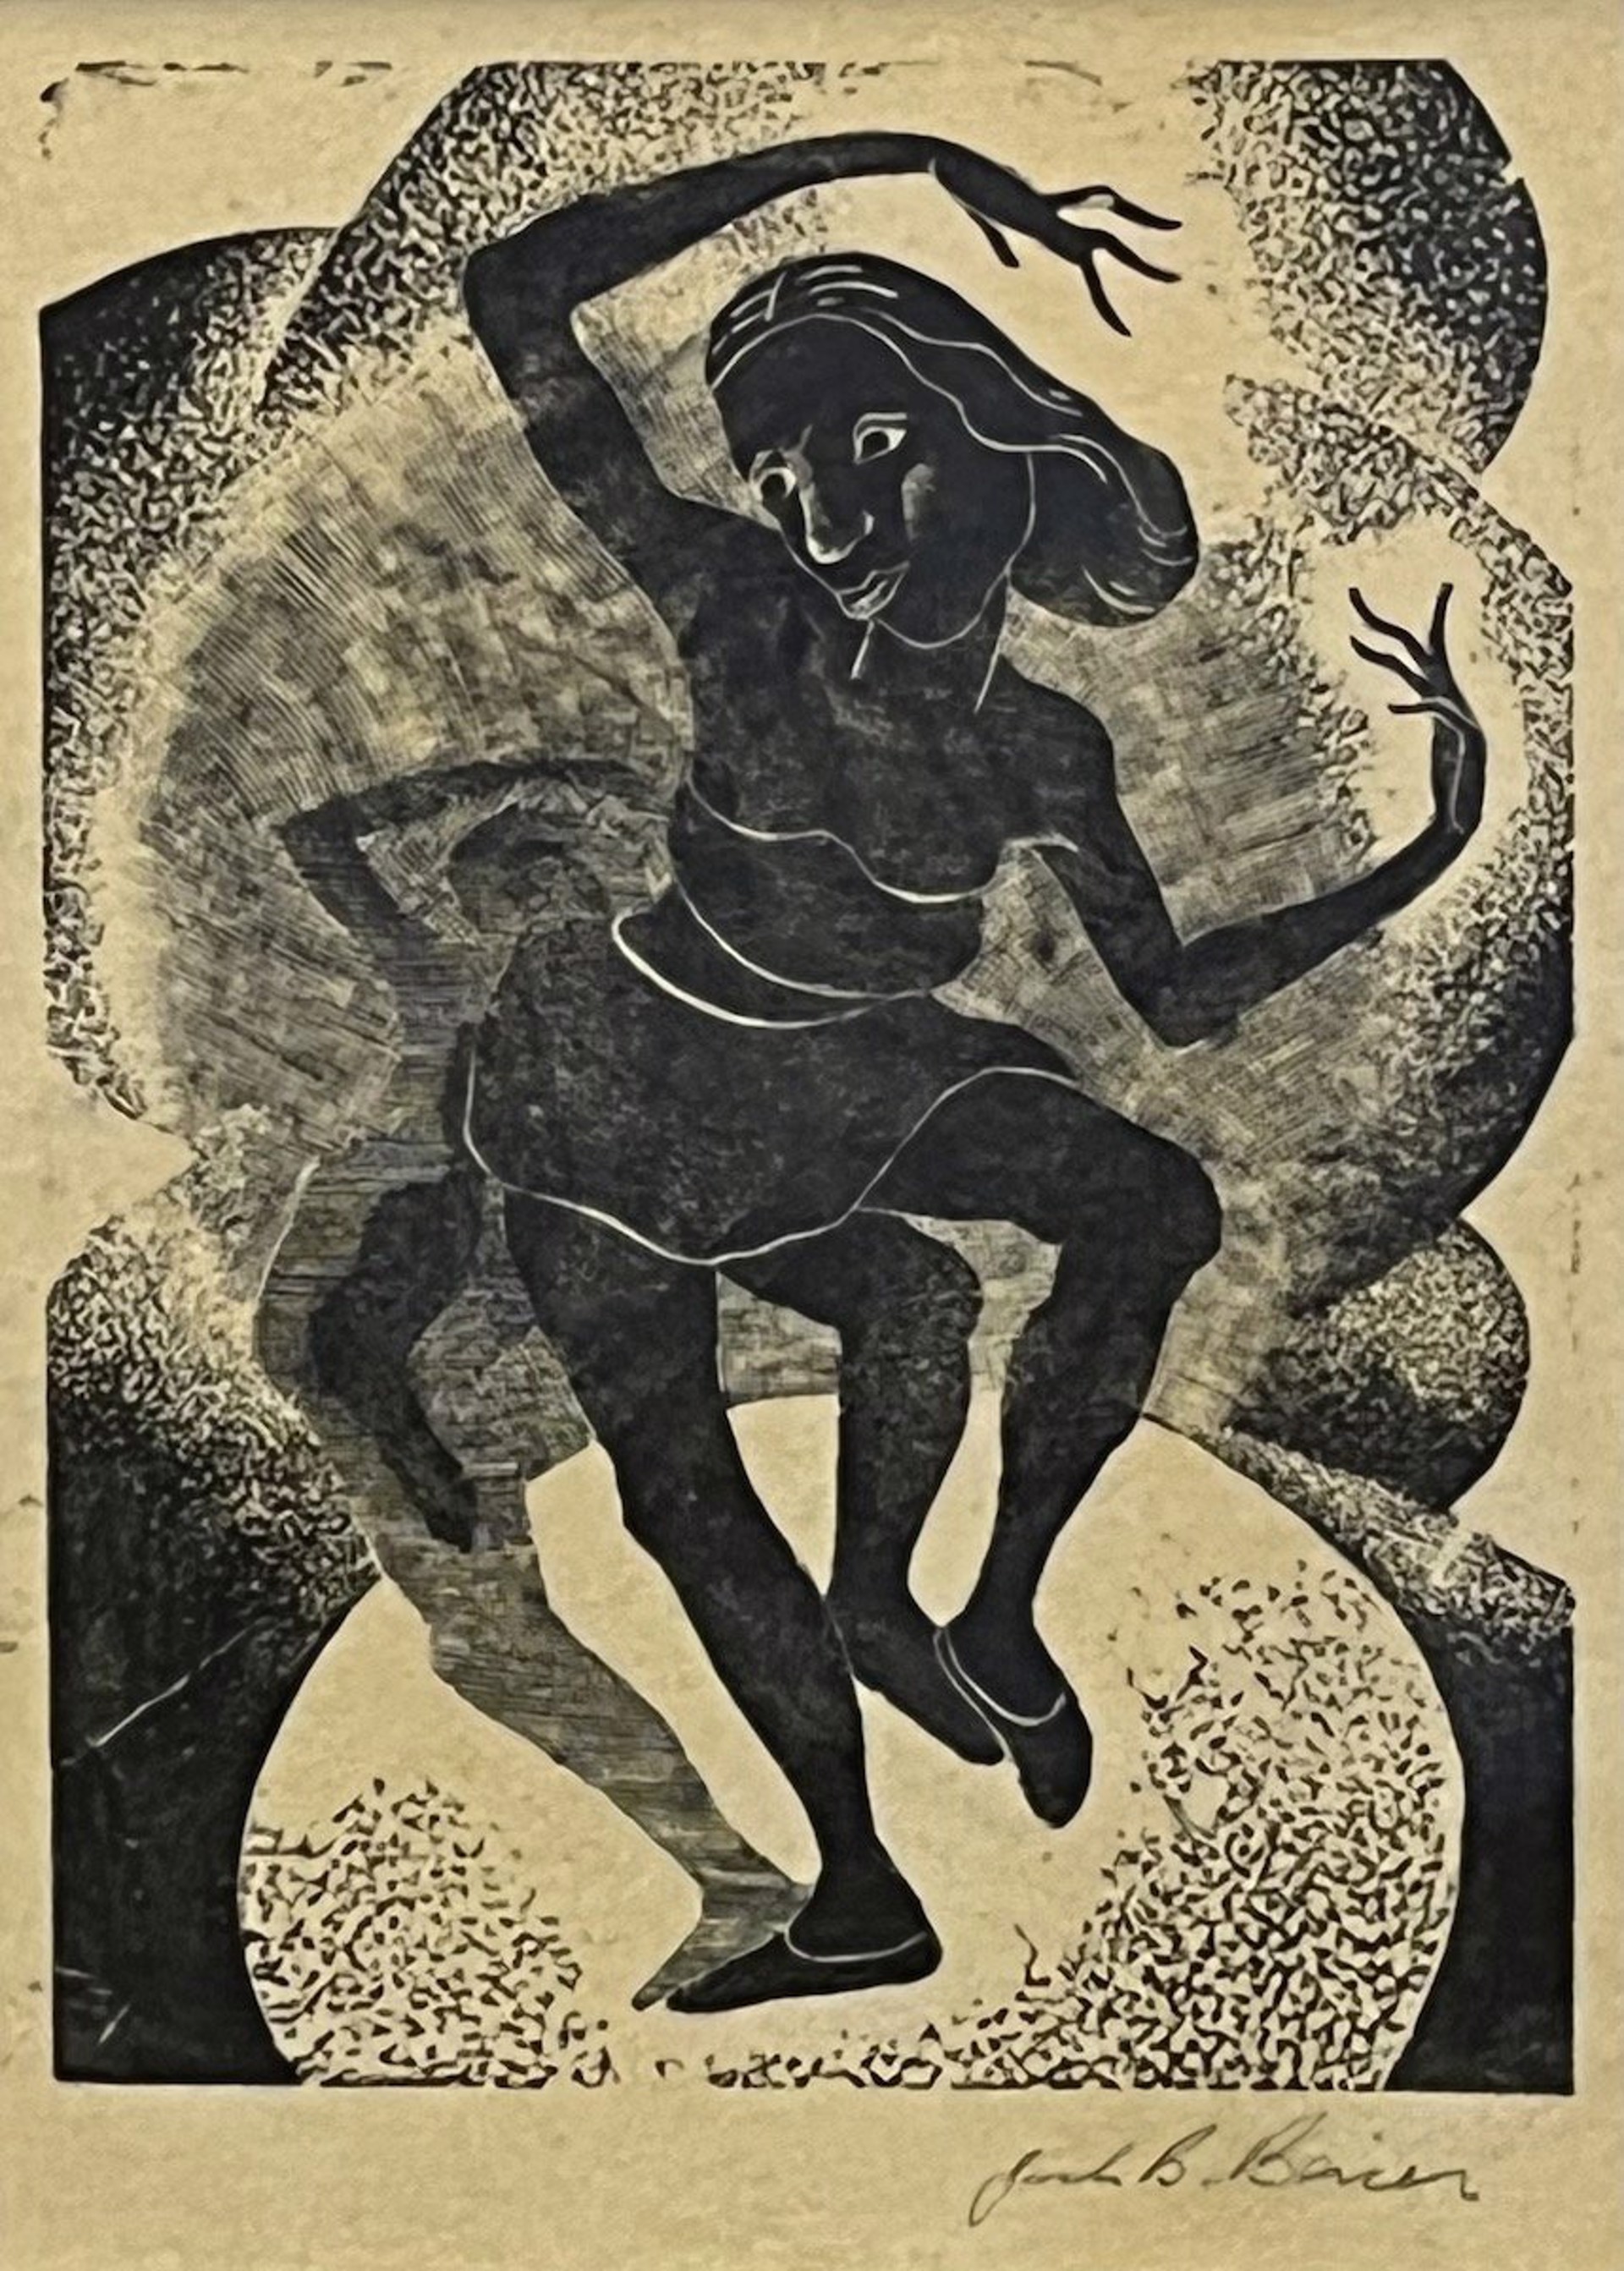 Dancer, 1949 by Jack Bevier